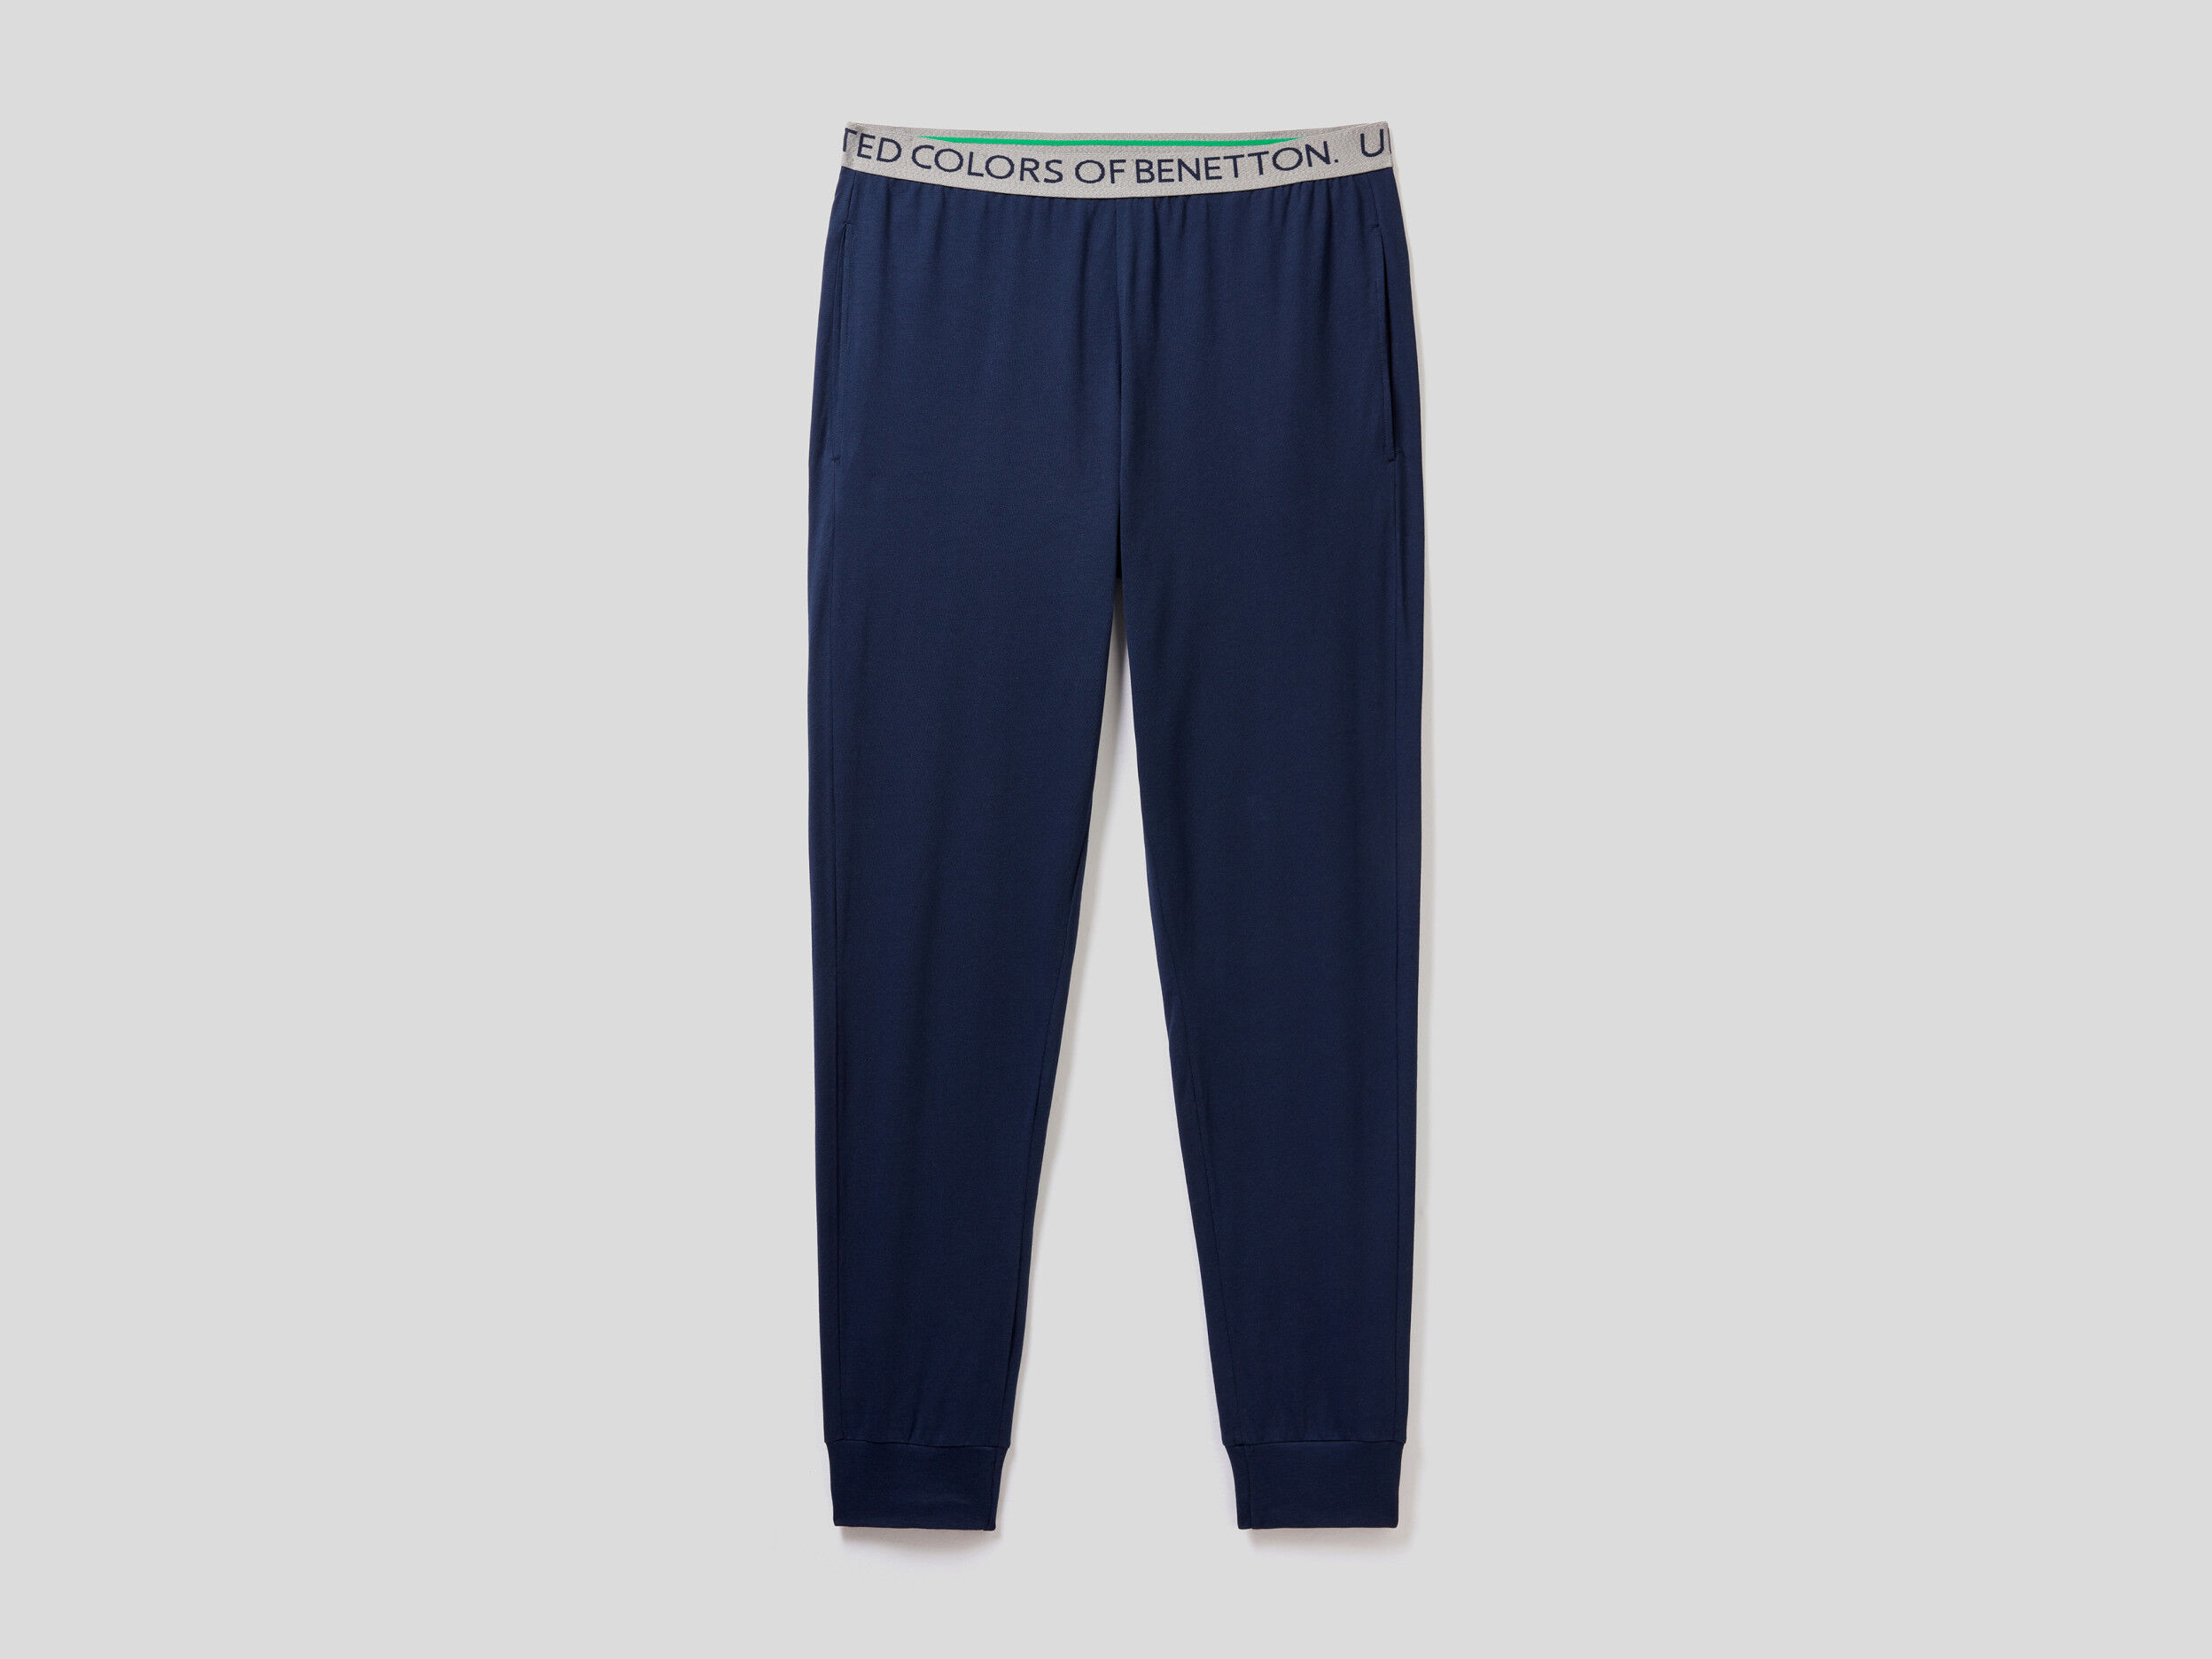 Caldi Pantaloni In Cotone Bio Stretch United Colors of Benetton Abbigliamento Pantaloni e jeans Pantaloni Pantaloni stretch 